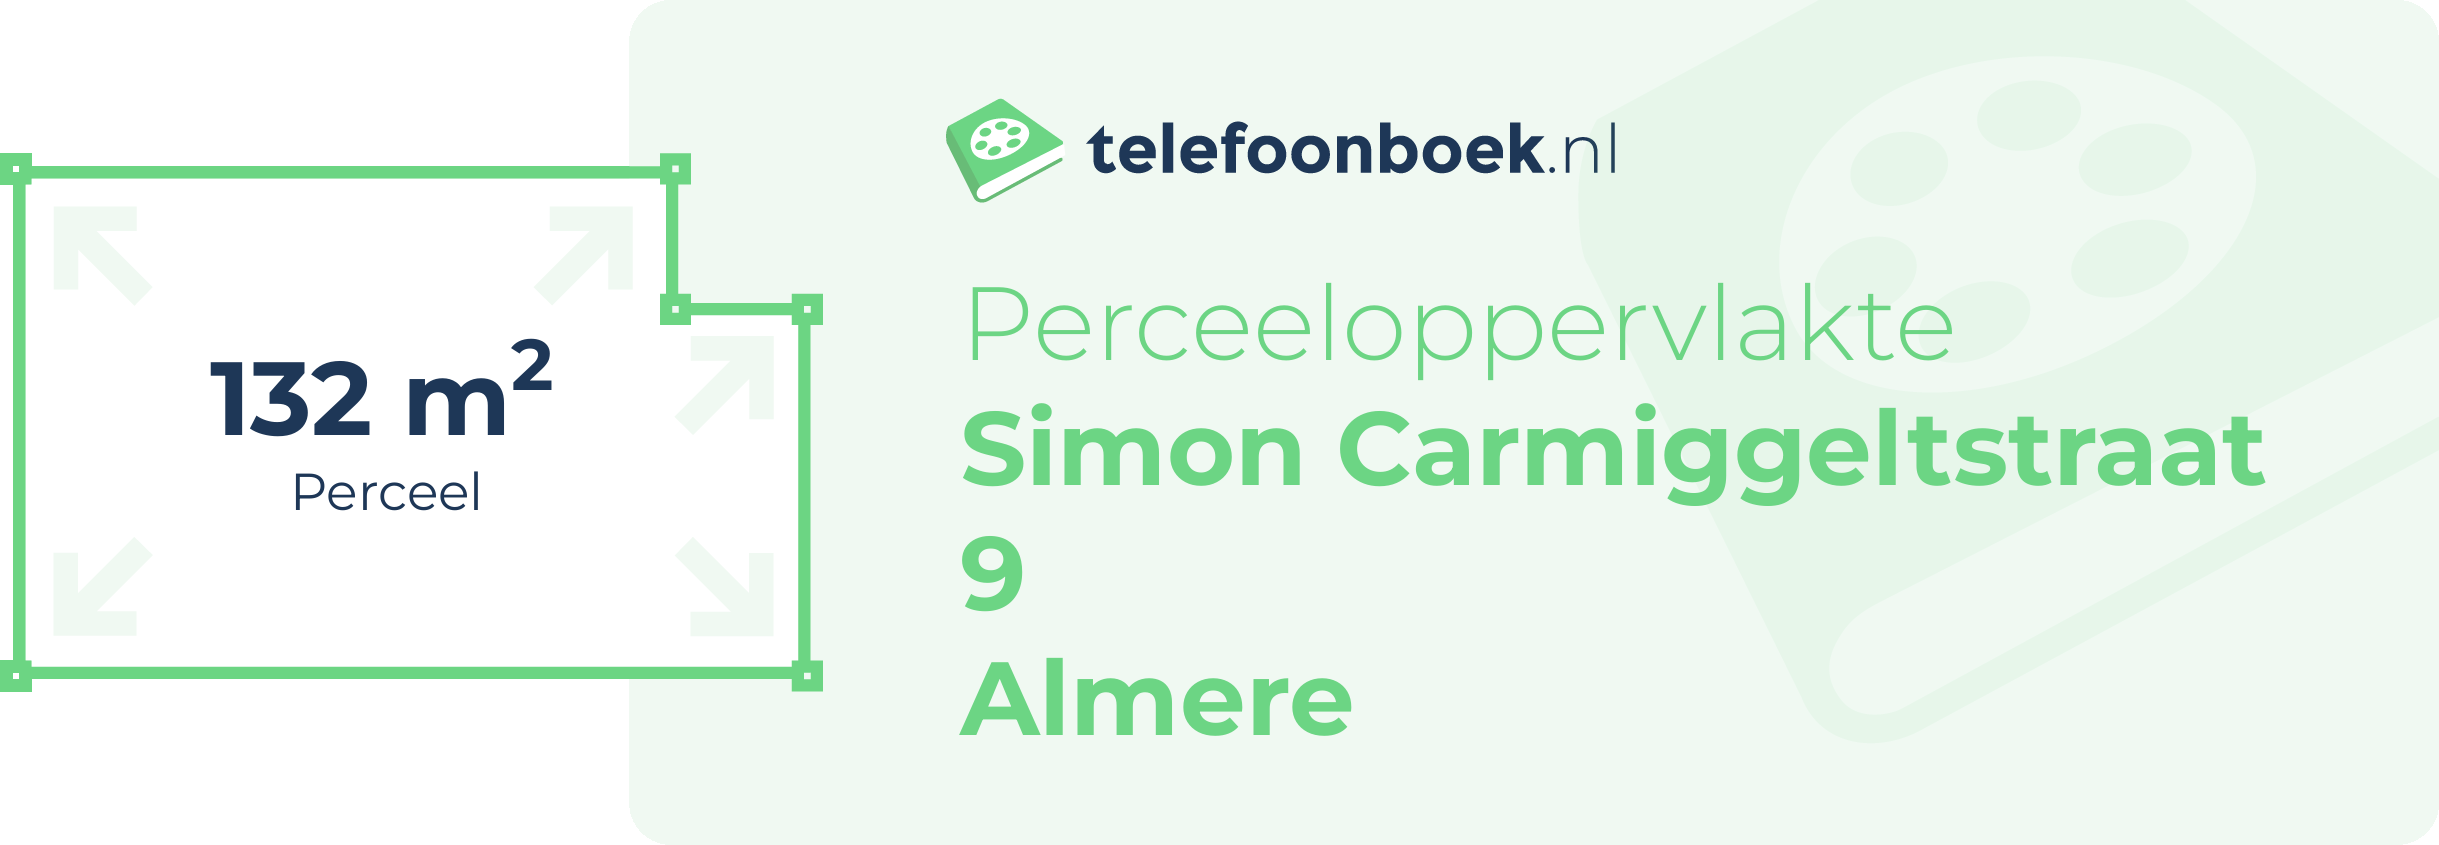 Perceeloppervlakte Simon Carmiggeltstraat 9 Almere